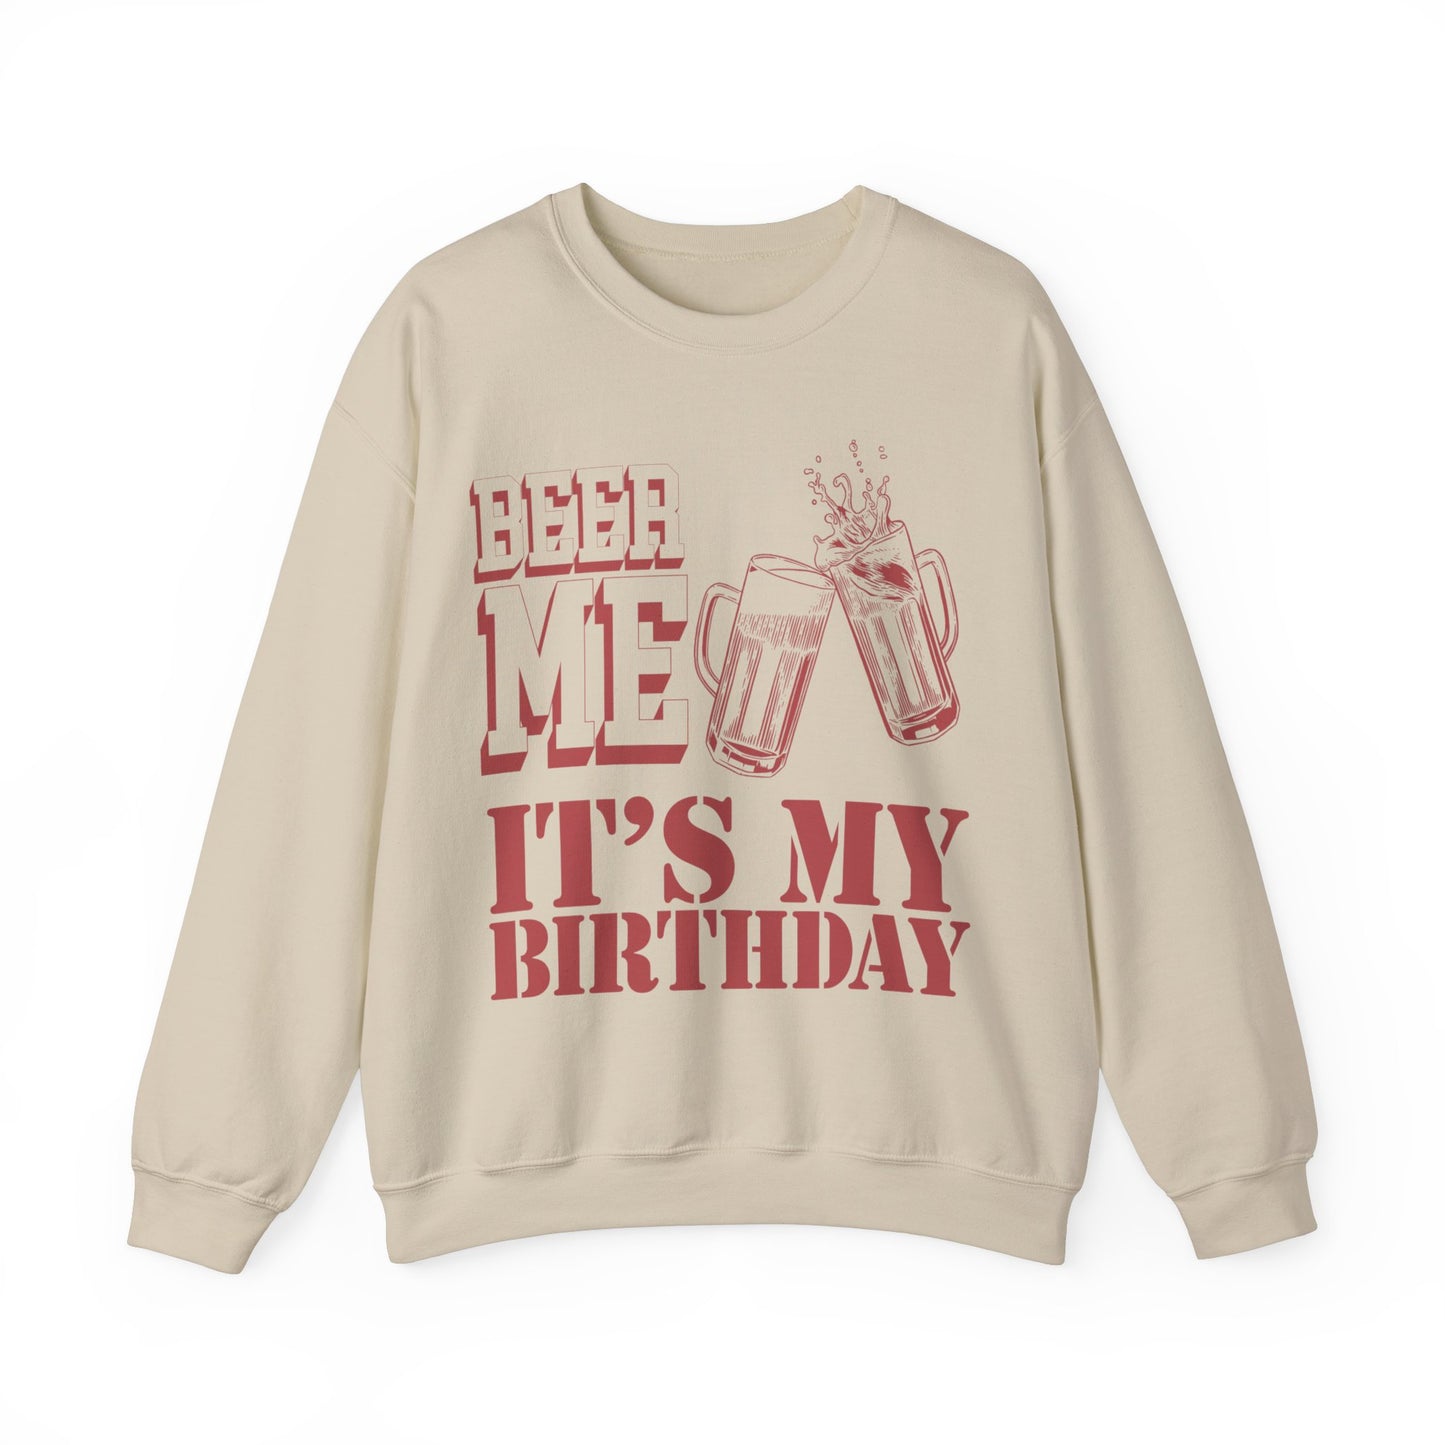 Beer Me It's My Birthday Sweatshirt, Funny Birthday Shirt for Dad, Funny Dad's Birthday Sweatshirt, Best Beer Lover Dad Sweatshirt, S1572